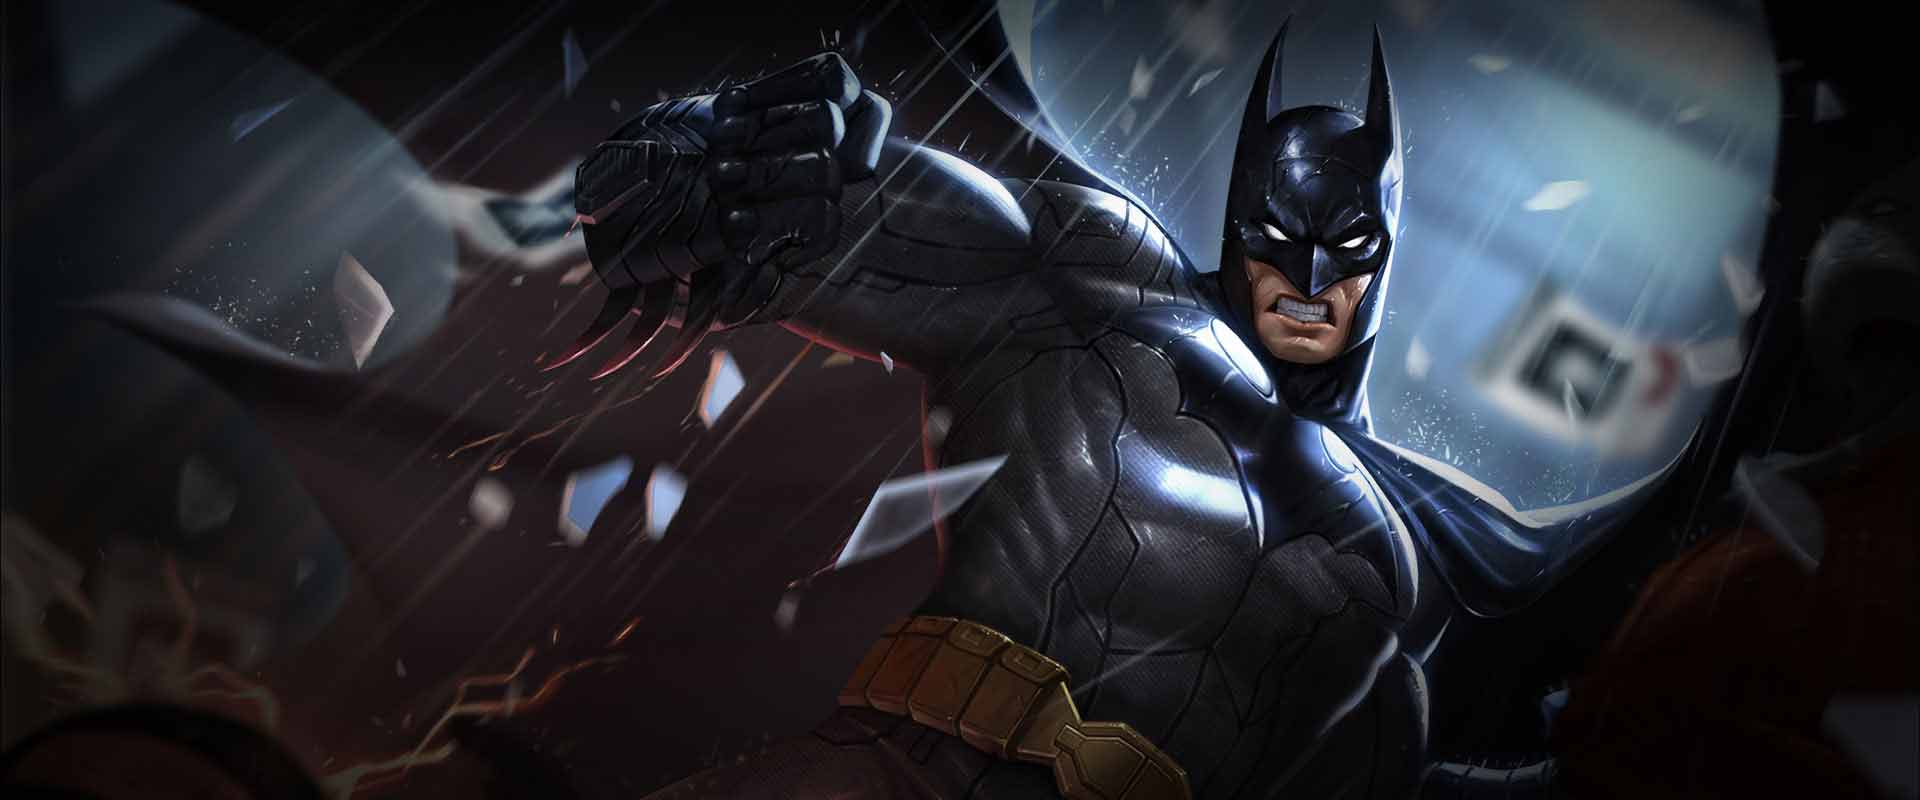 Batman Liên Quân: Hãy cùng tham gia vào Liên Quân để đối đầu với Batman, siêu anh hùng của Gotham, người sẽ giúp bạn đánh bại tất cả kẻ thù và chiến thắng trận đấu với bản năng và sức mạnh đáng sợ. Hãy xem Batman sẽ giúp bạn chiến thắng như thế nào!